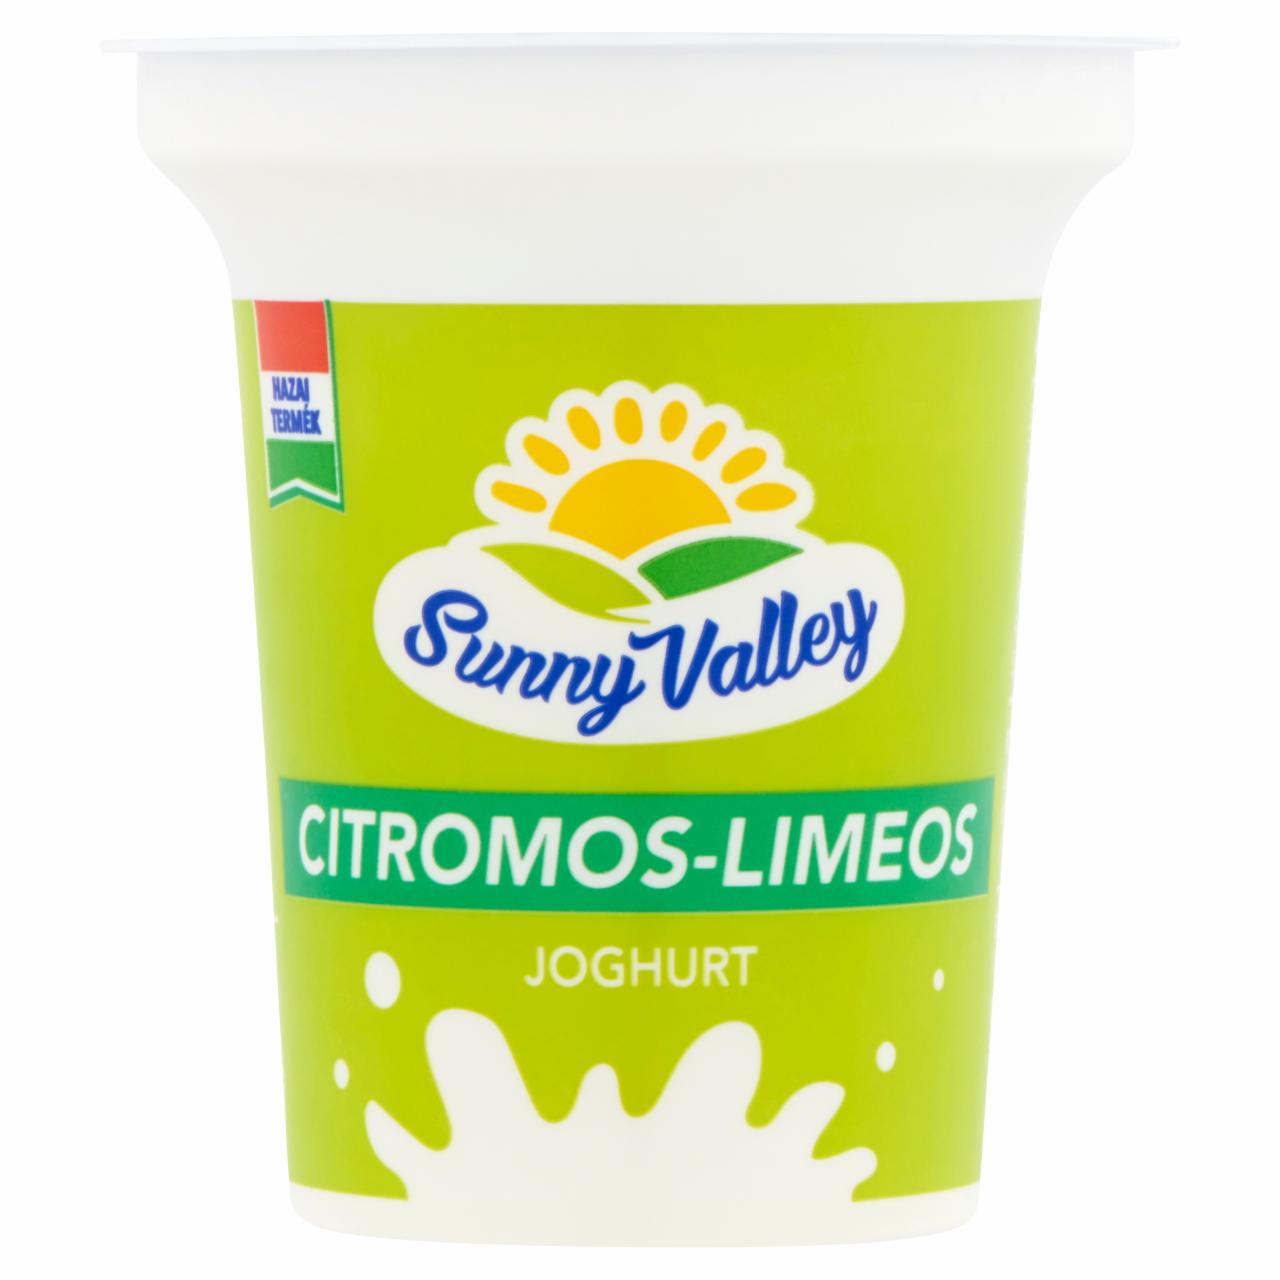 Képek - Sunny Valley élőflórás, zsírszegény citromos-limeos joghurt 140 g